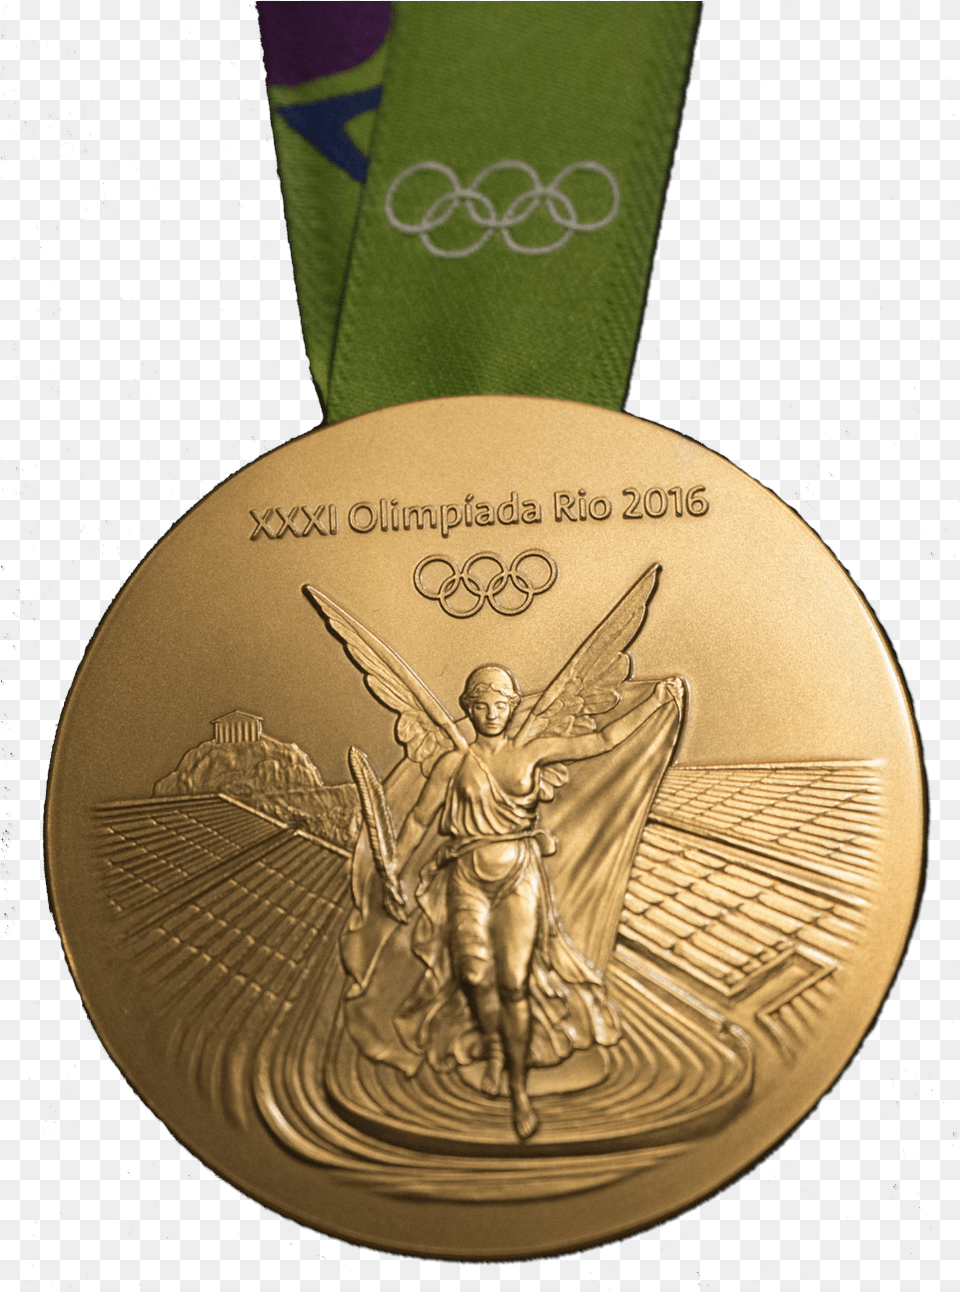 Gold Medal Olympic Gold Medal, Gold Medal, Trophy, Adult, Bride Png Image